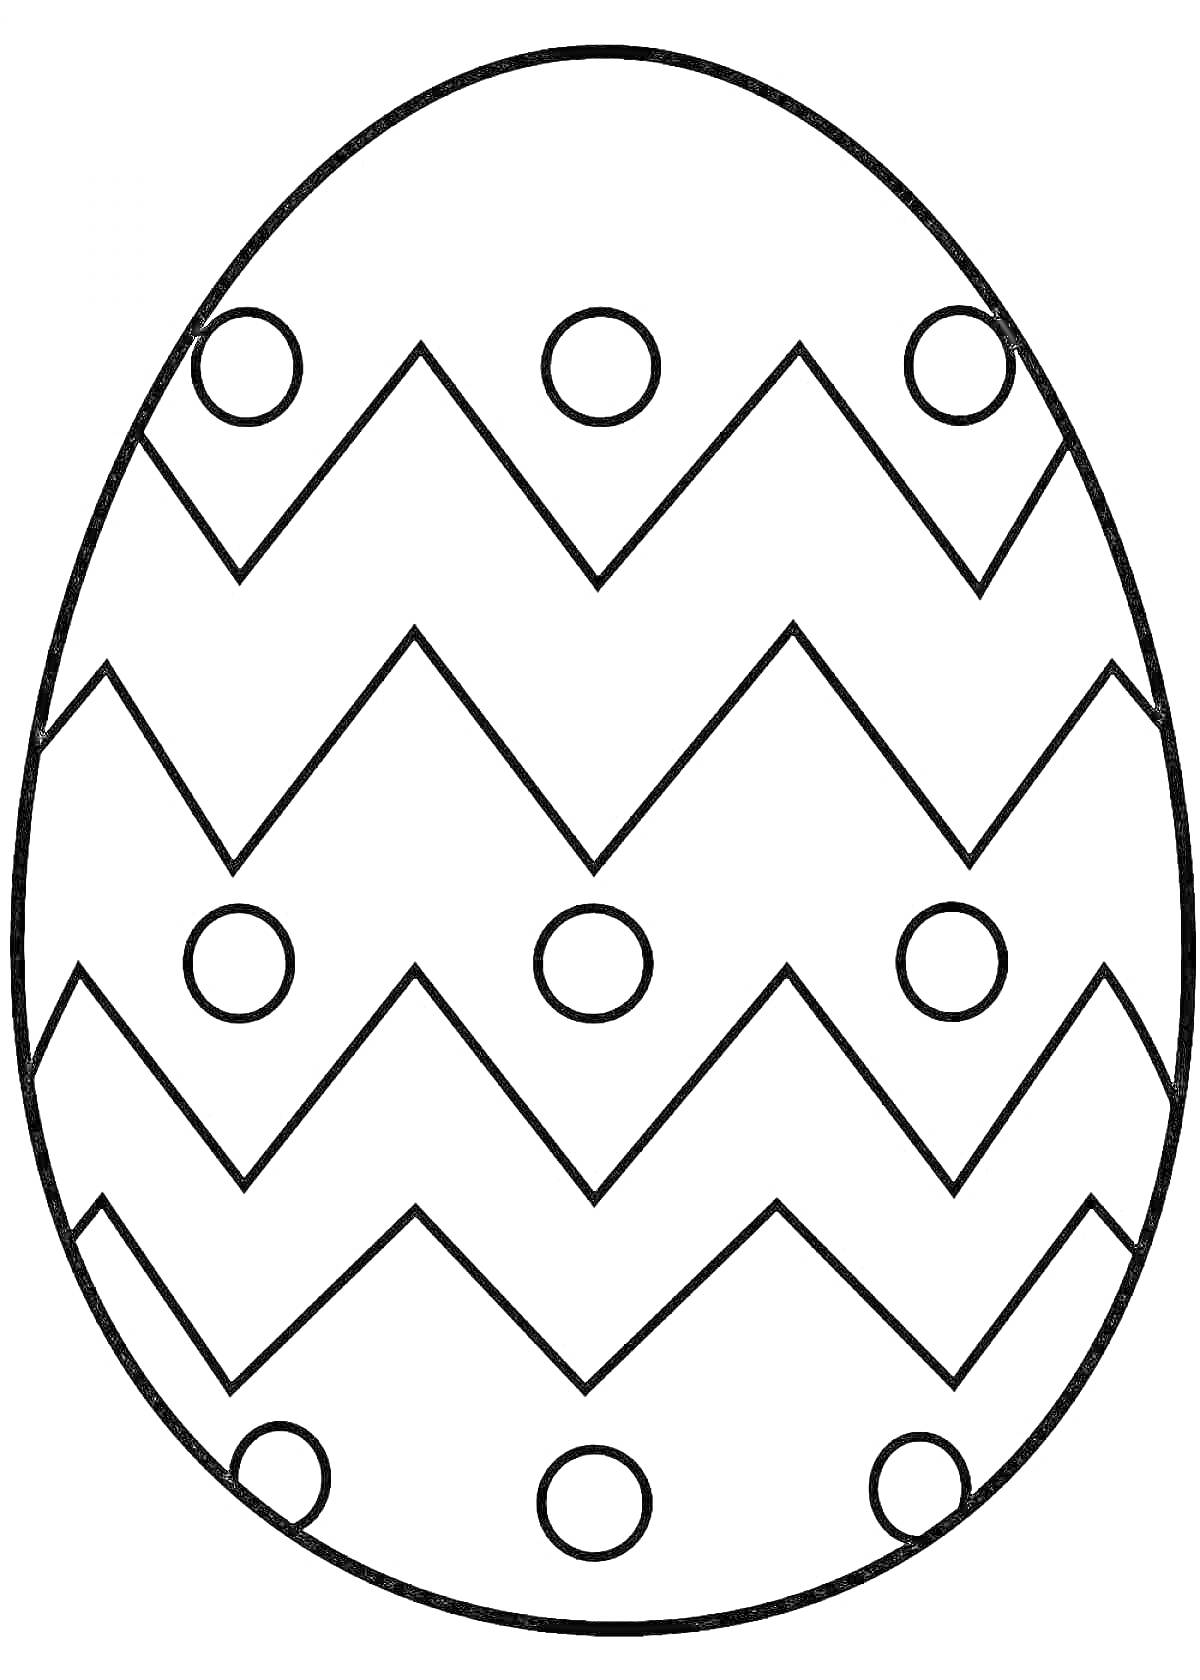 Пасхальное яйцо с зигзагообразным узором и кругами